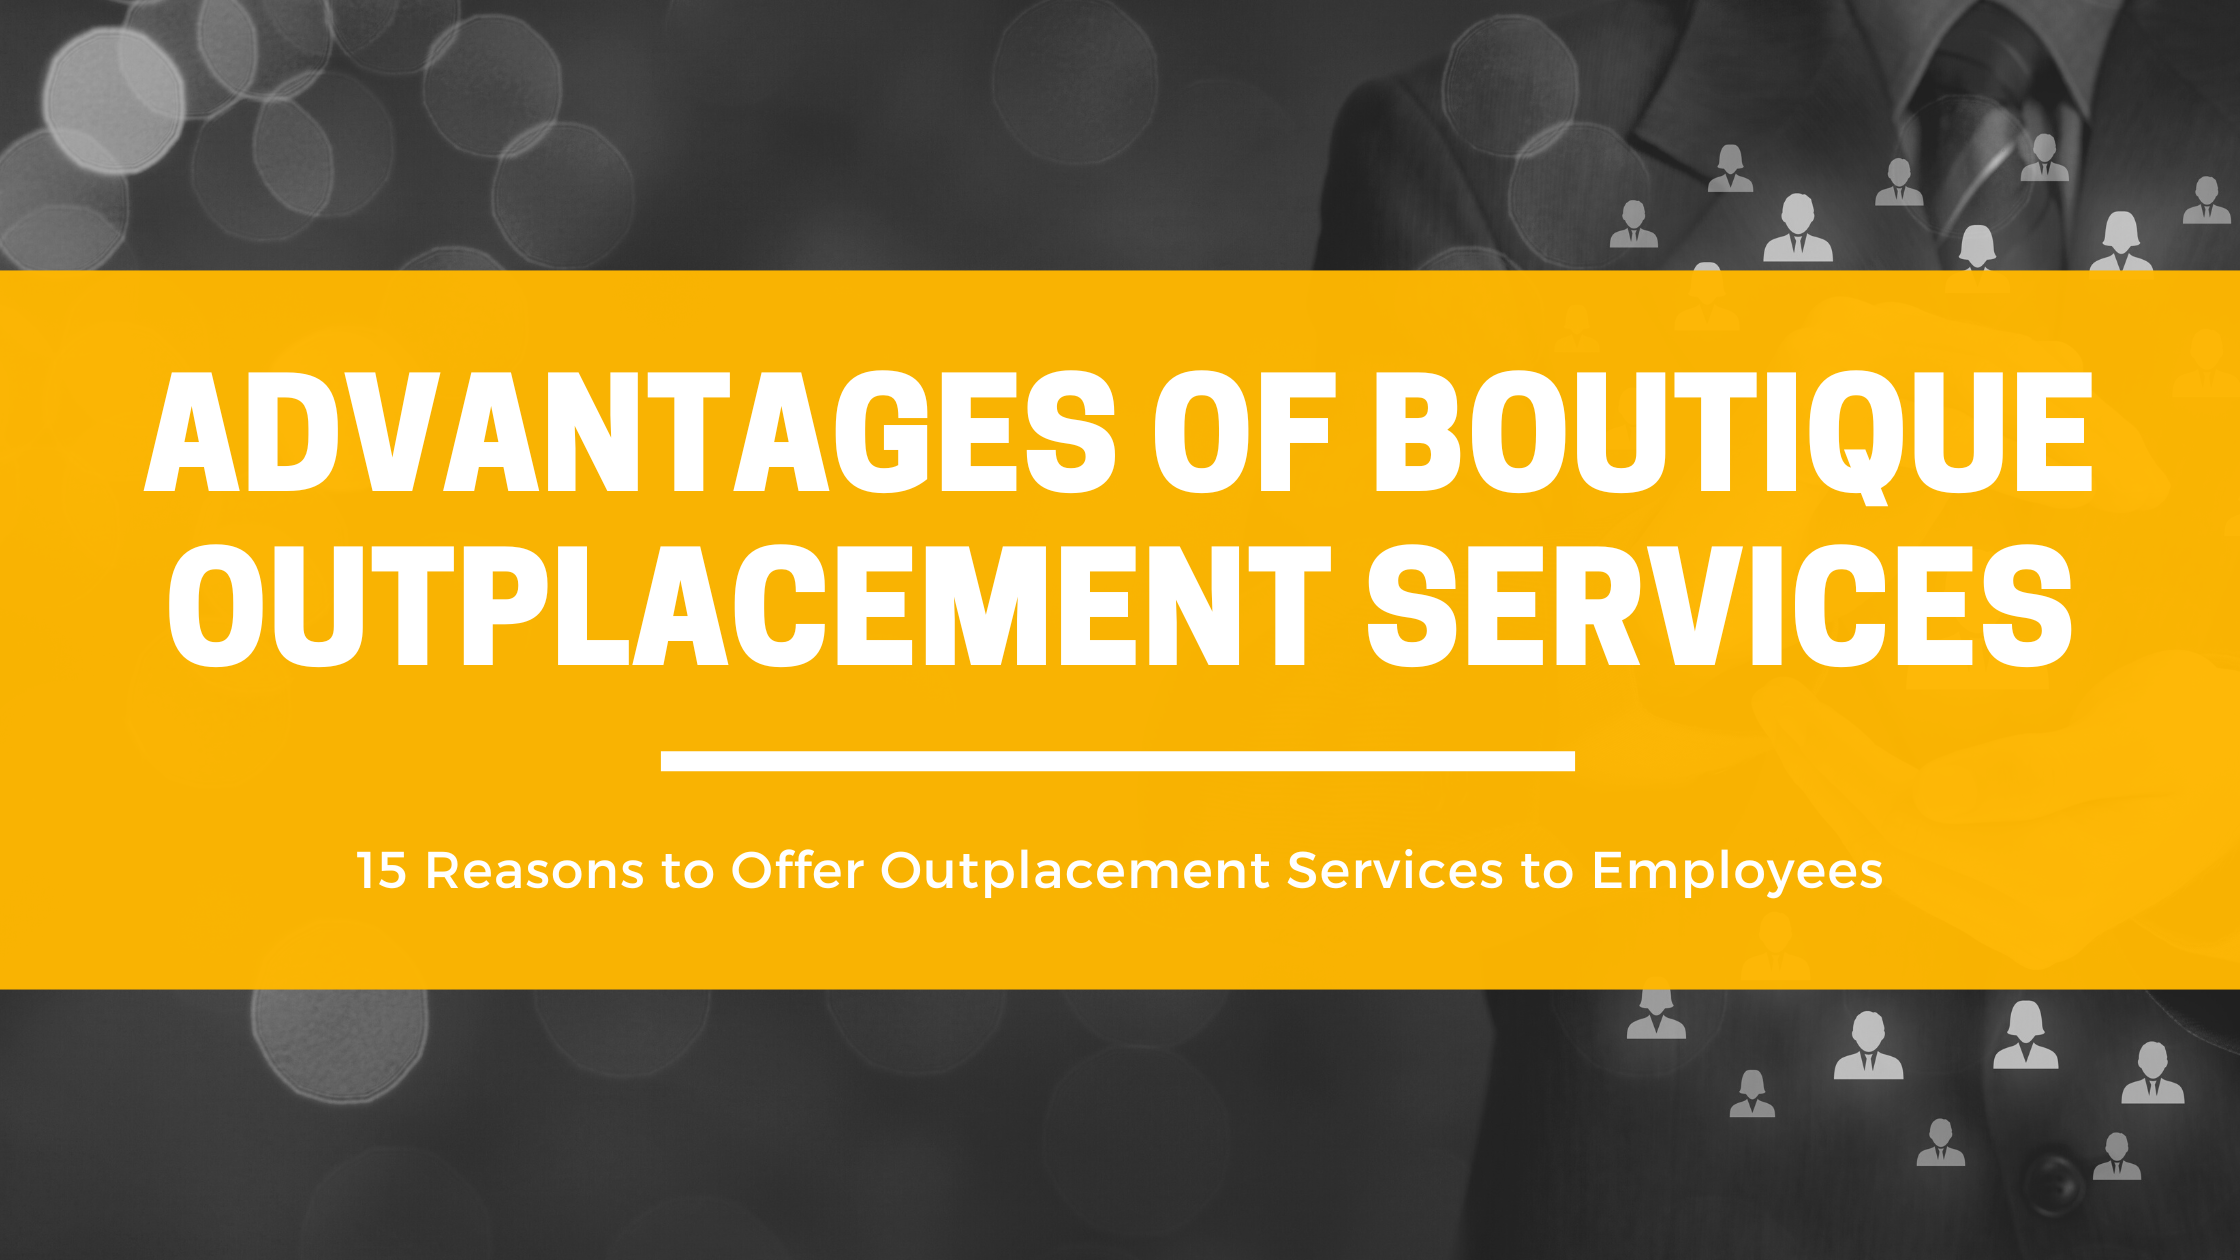 15 Competitive Advantages of Boutique Outplacement Services